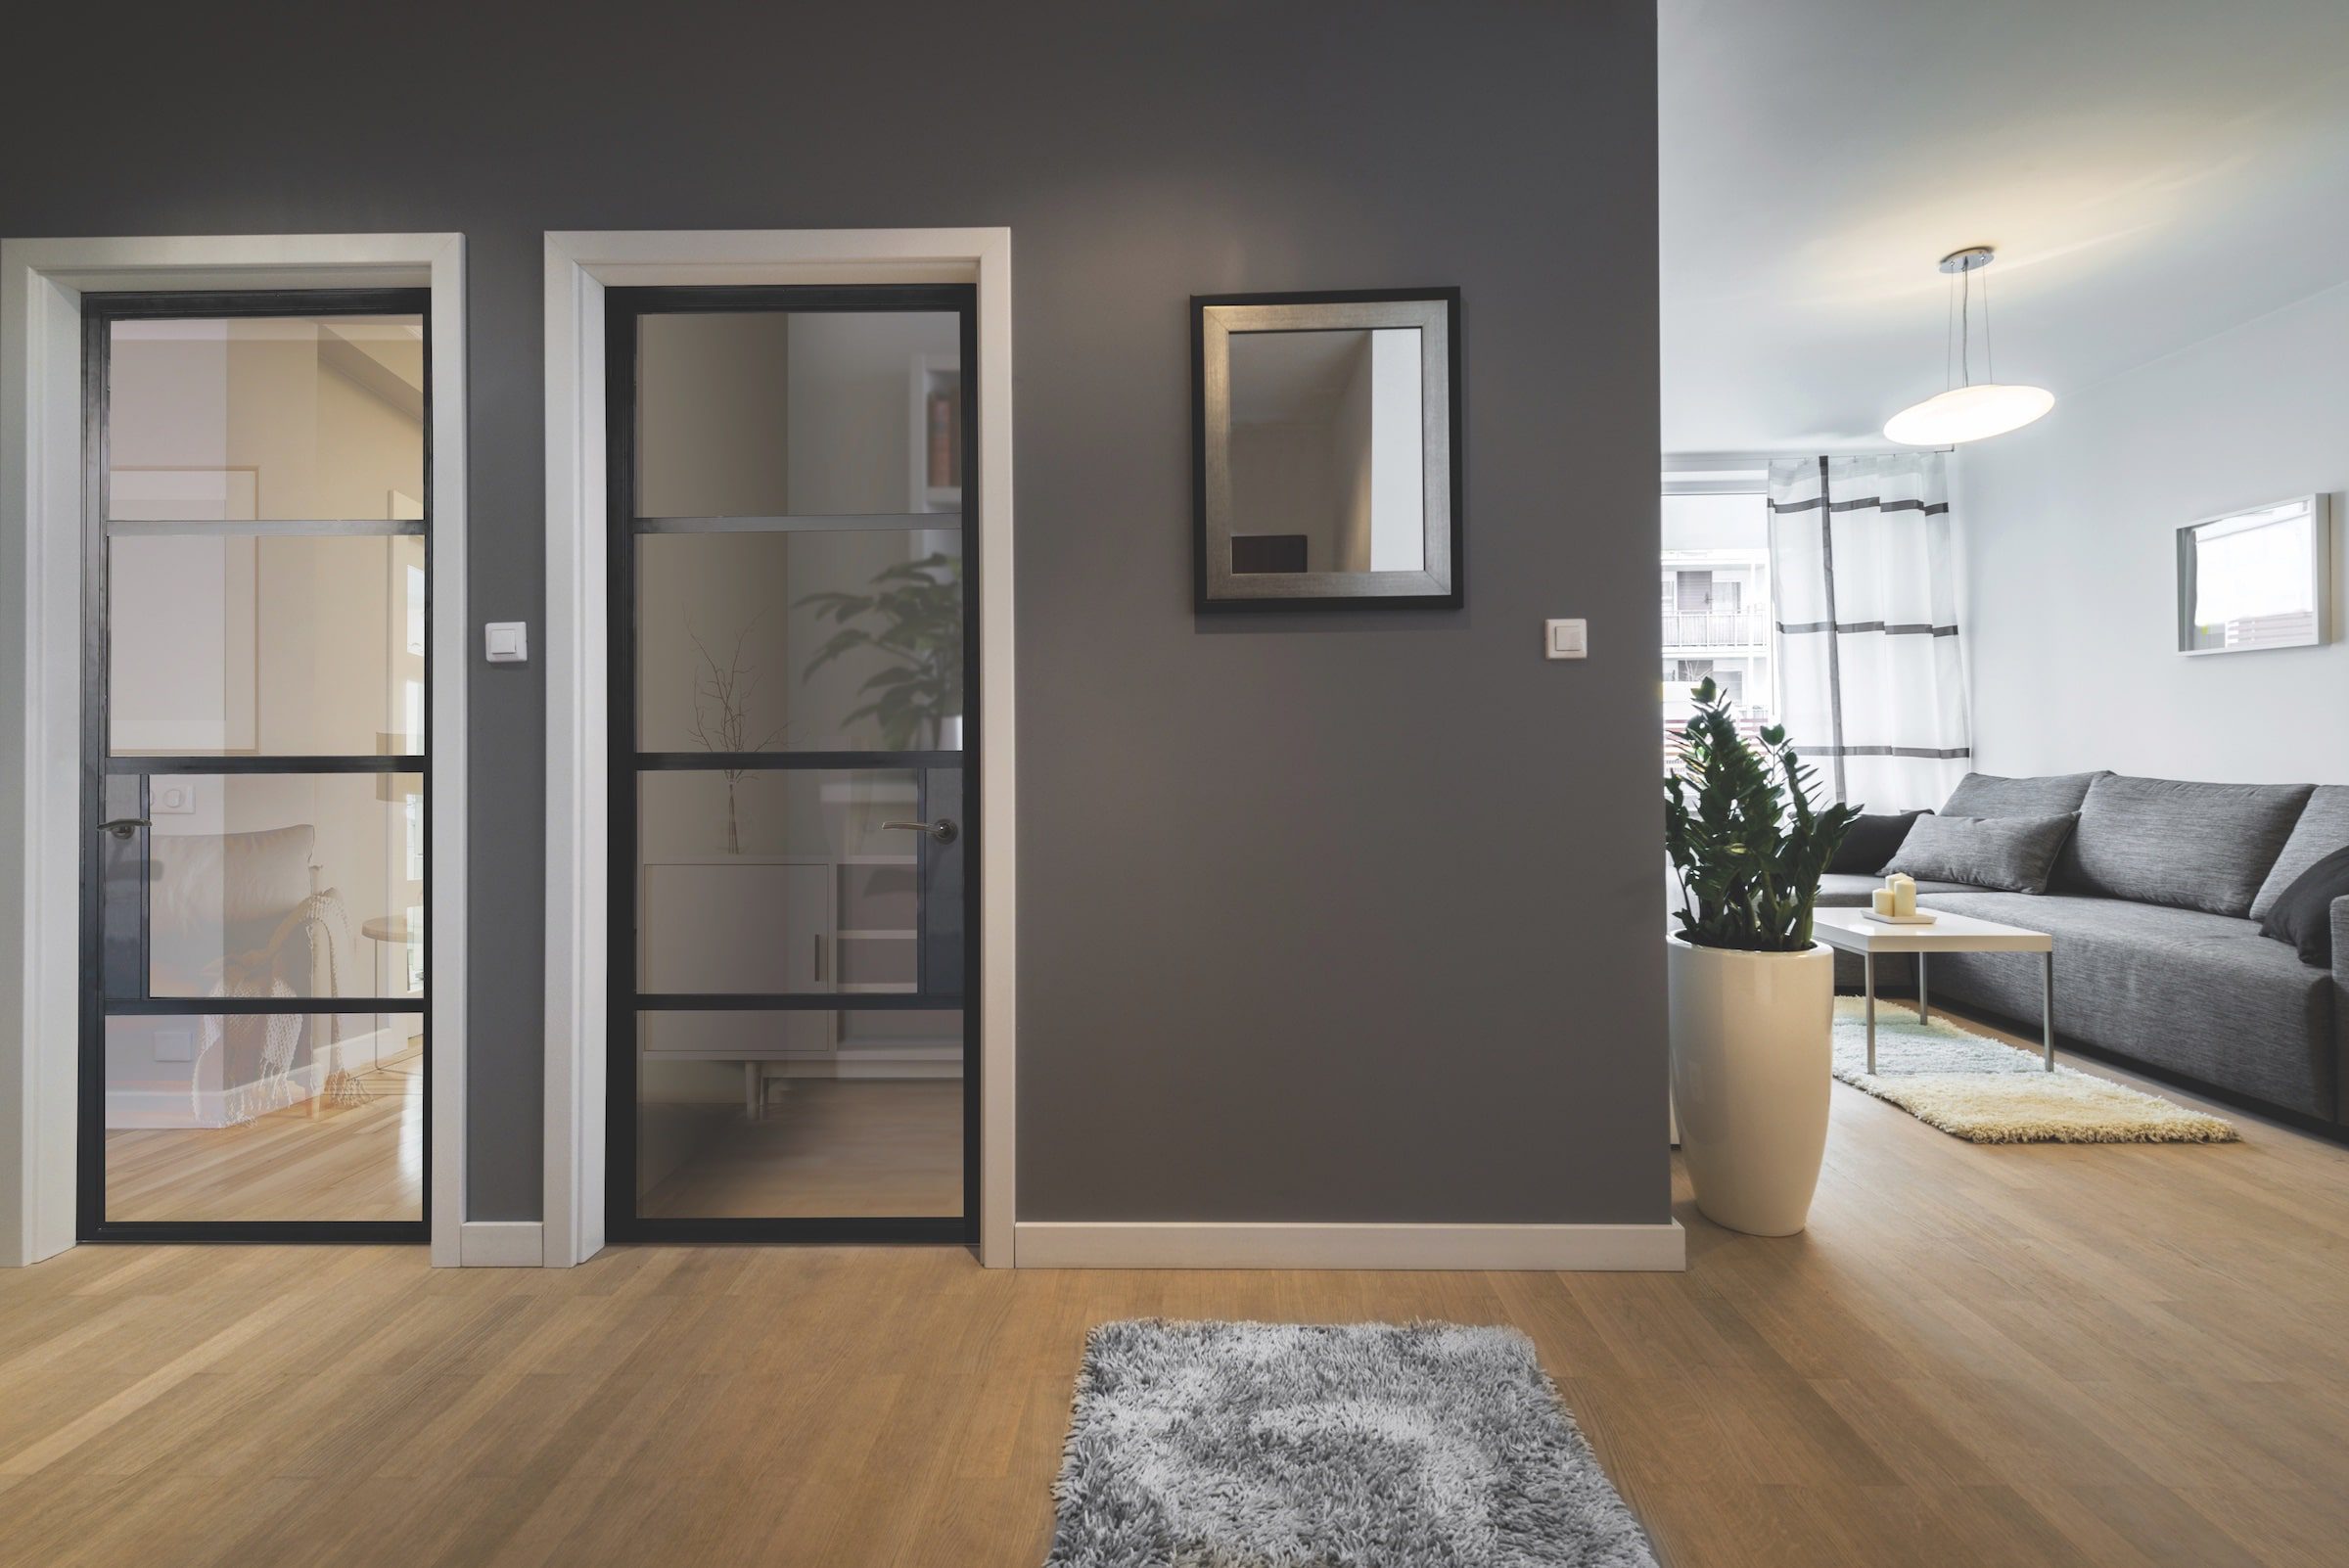 aluco steel-look interior doors to a bedroom